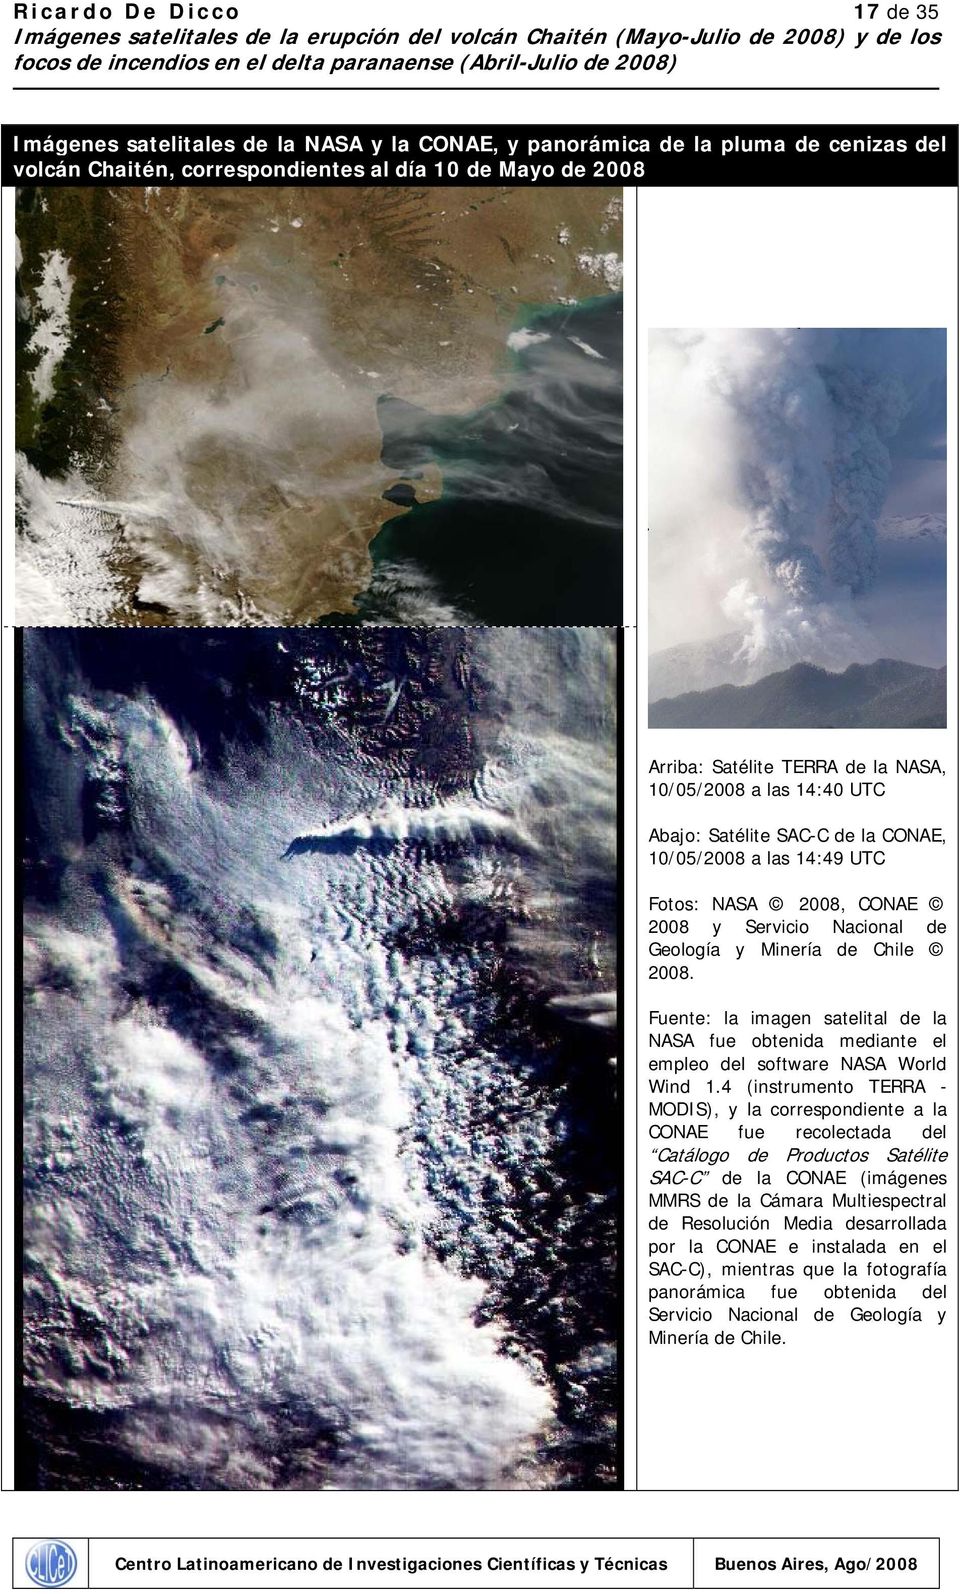 Fuente: la imagen satelital de la NASA fue obtenida mediante el empleo del software NASA World Wind 1.